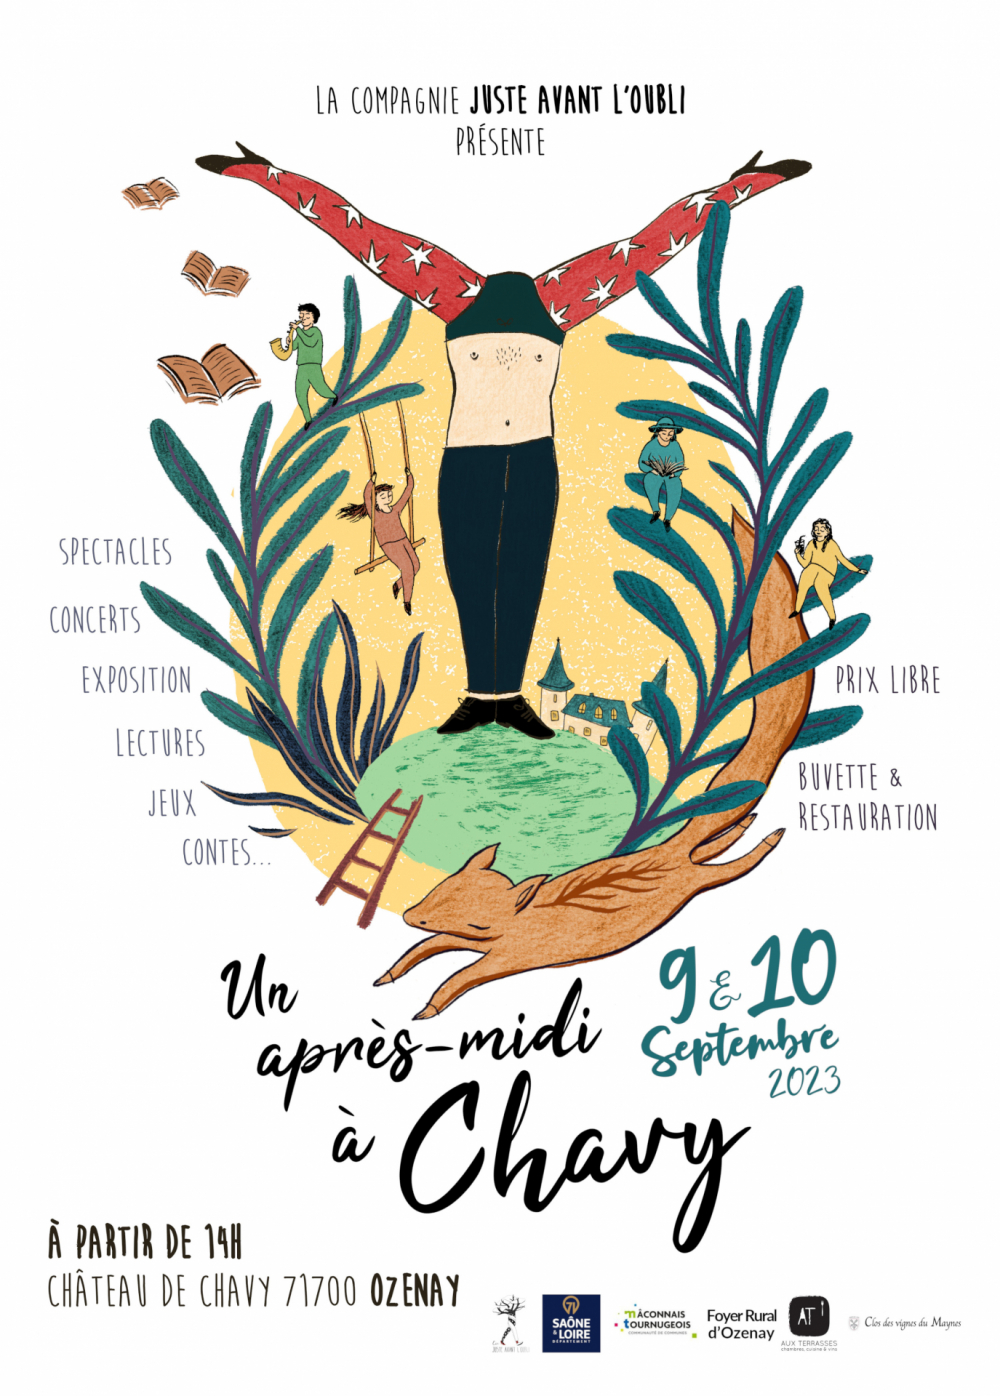 Rendez-vous au festival "Un après-midi à Chavy" les 9 & 10 septembre à Ozenay